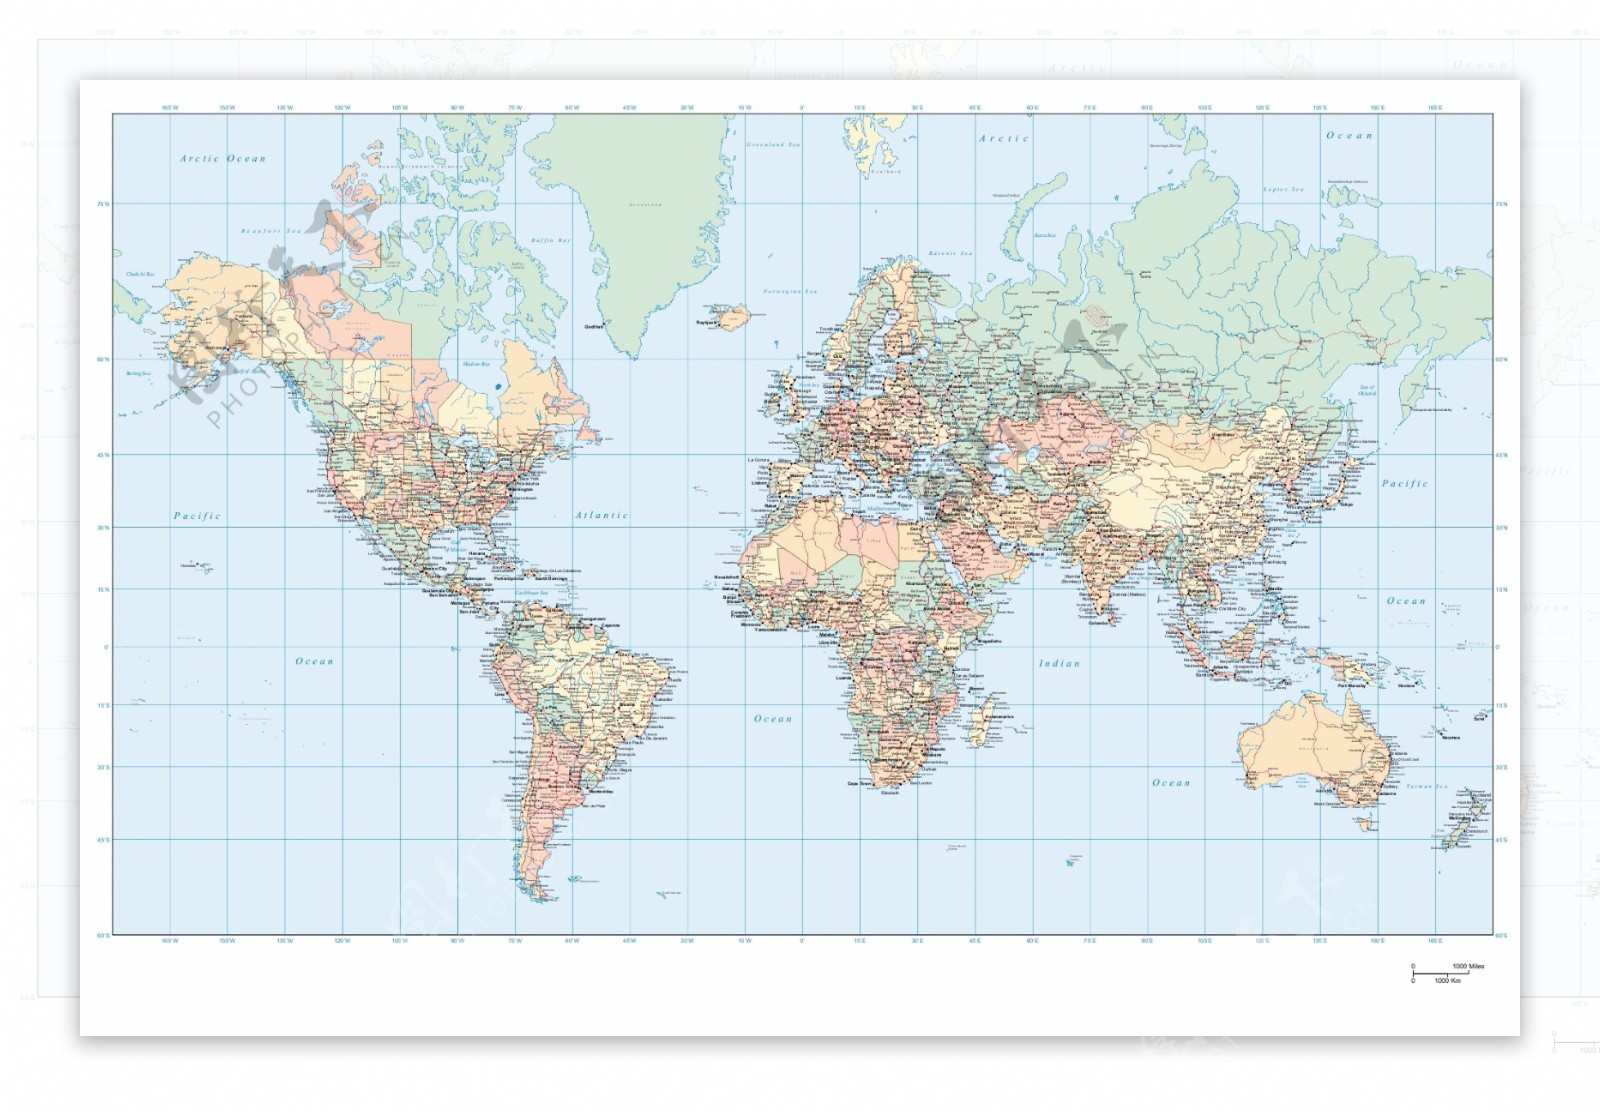 很全的世界地图